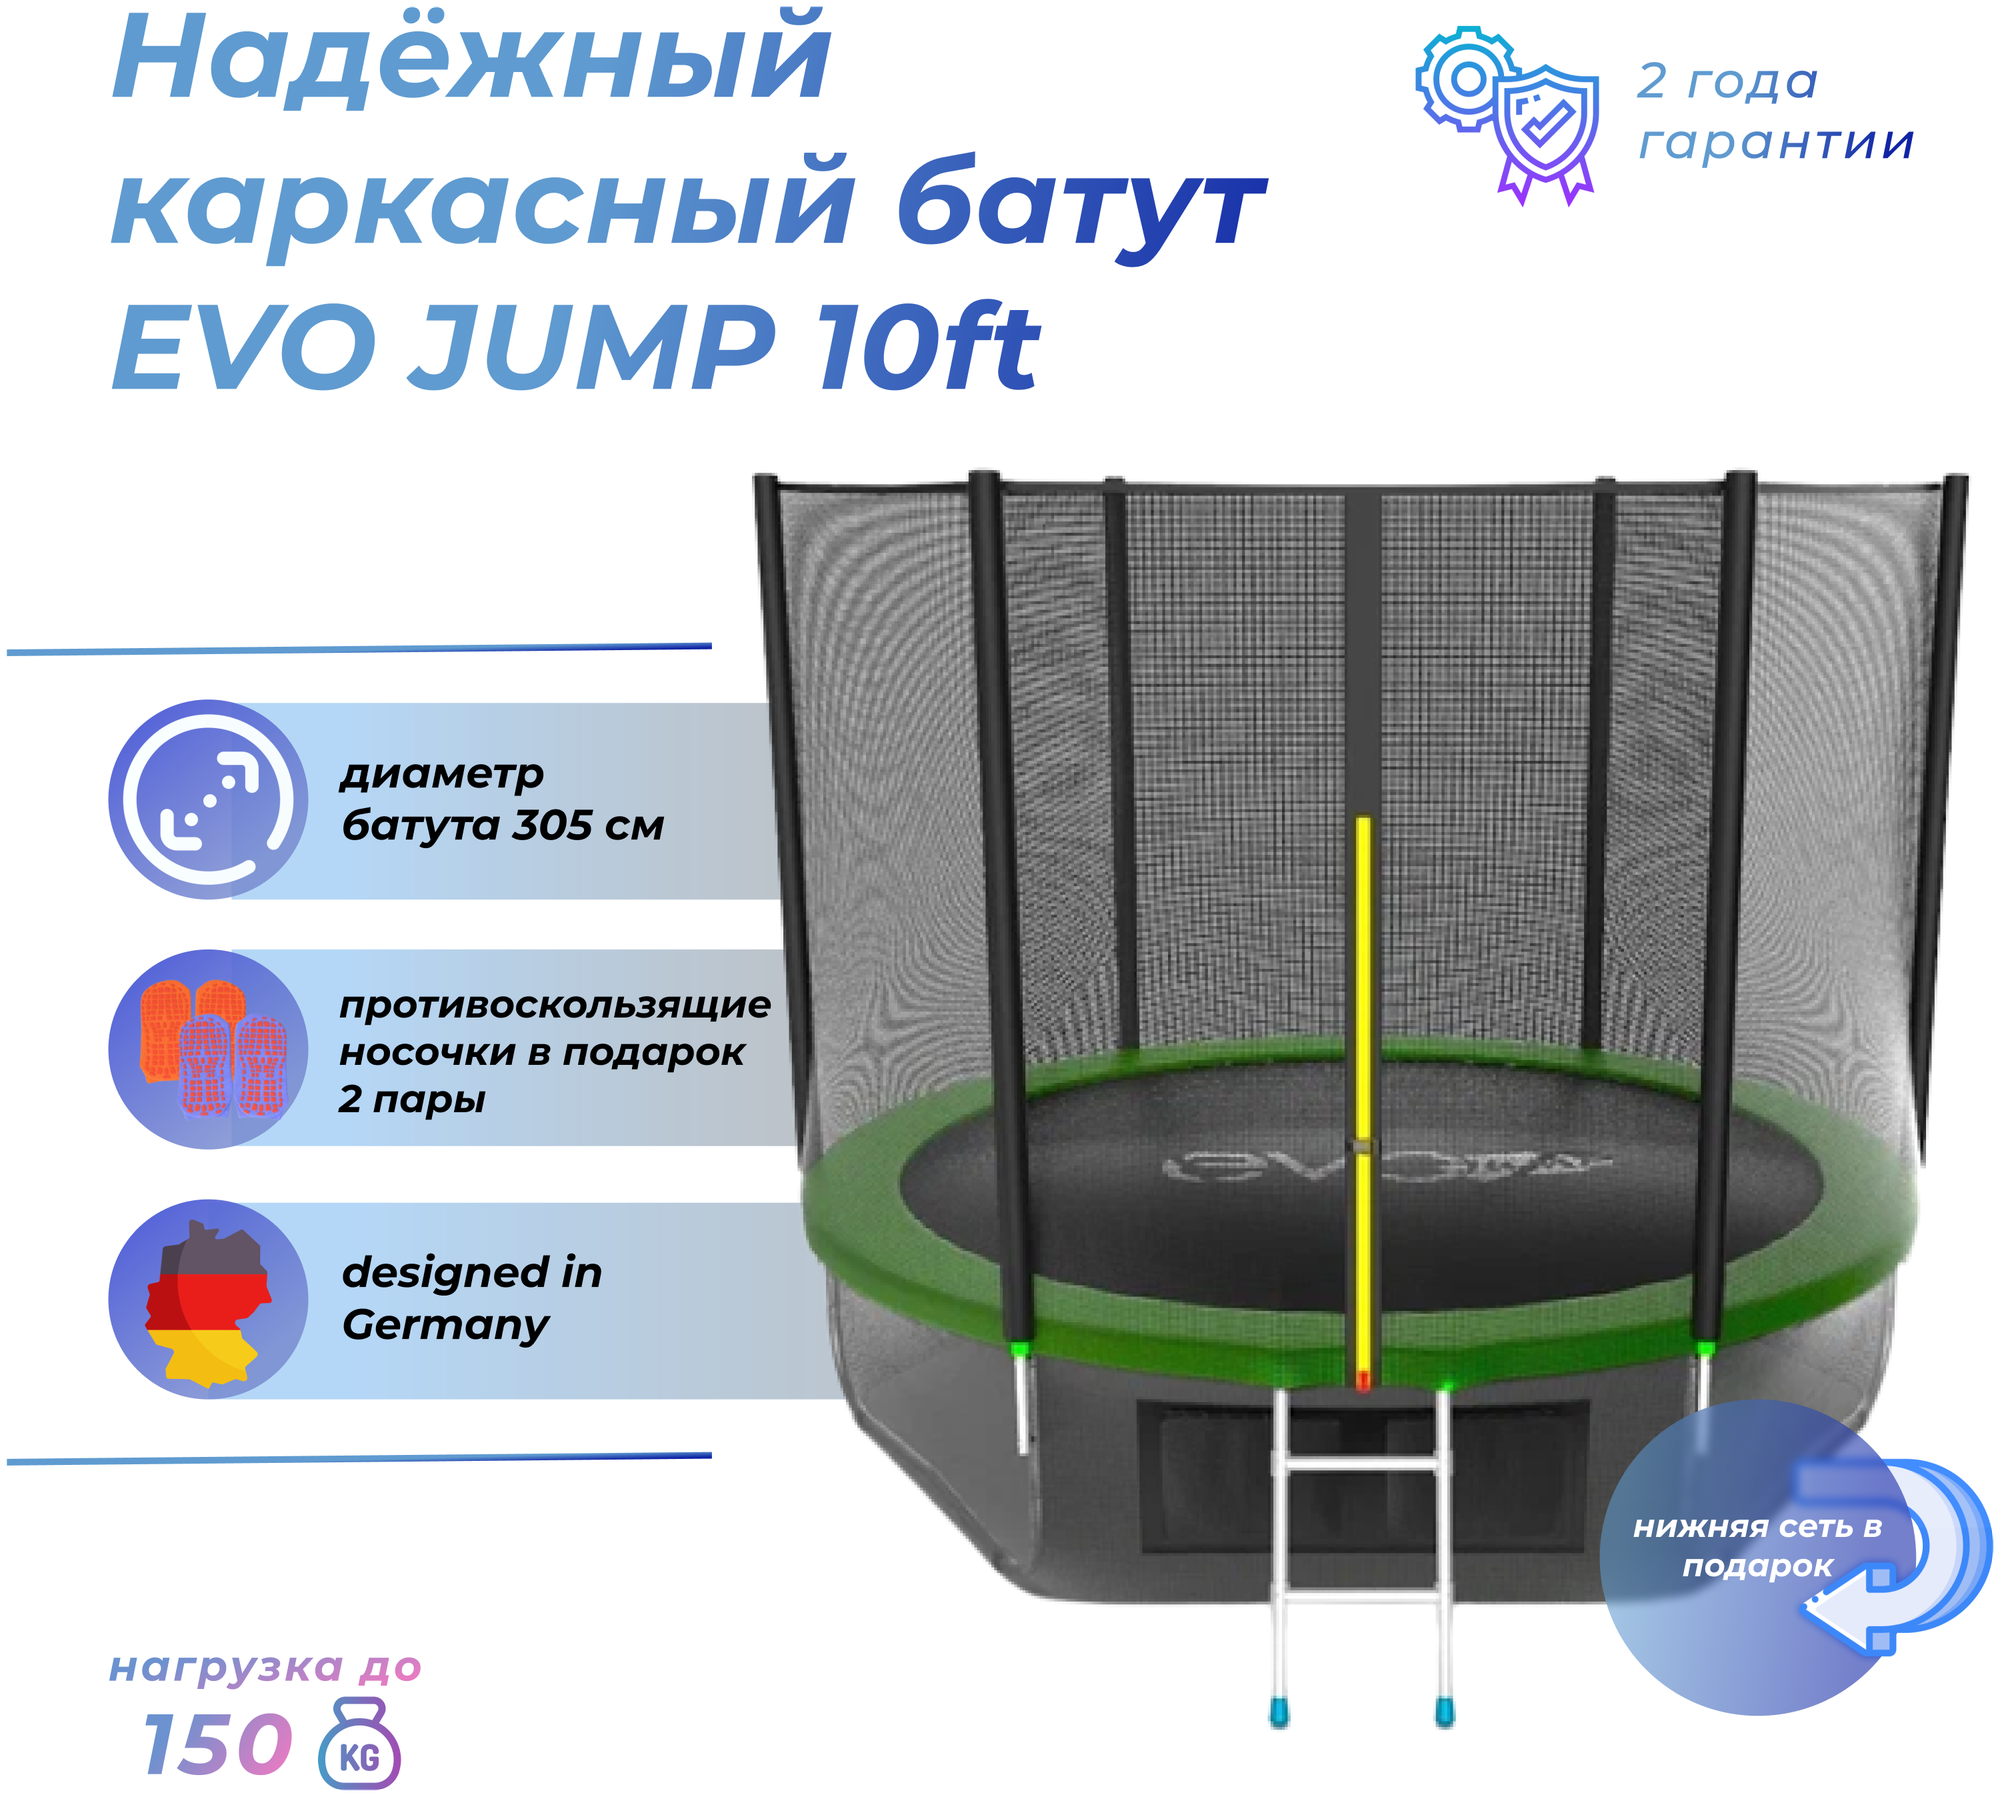  EVO Jump External 10ft (Green)      +  